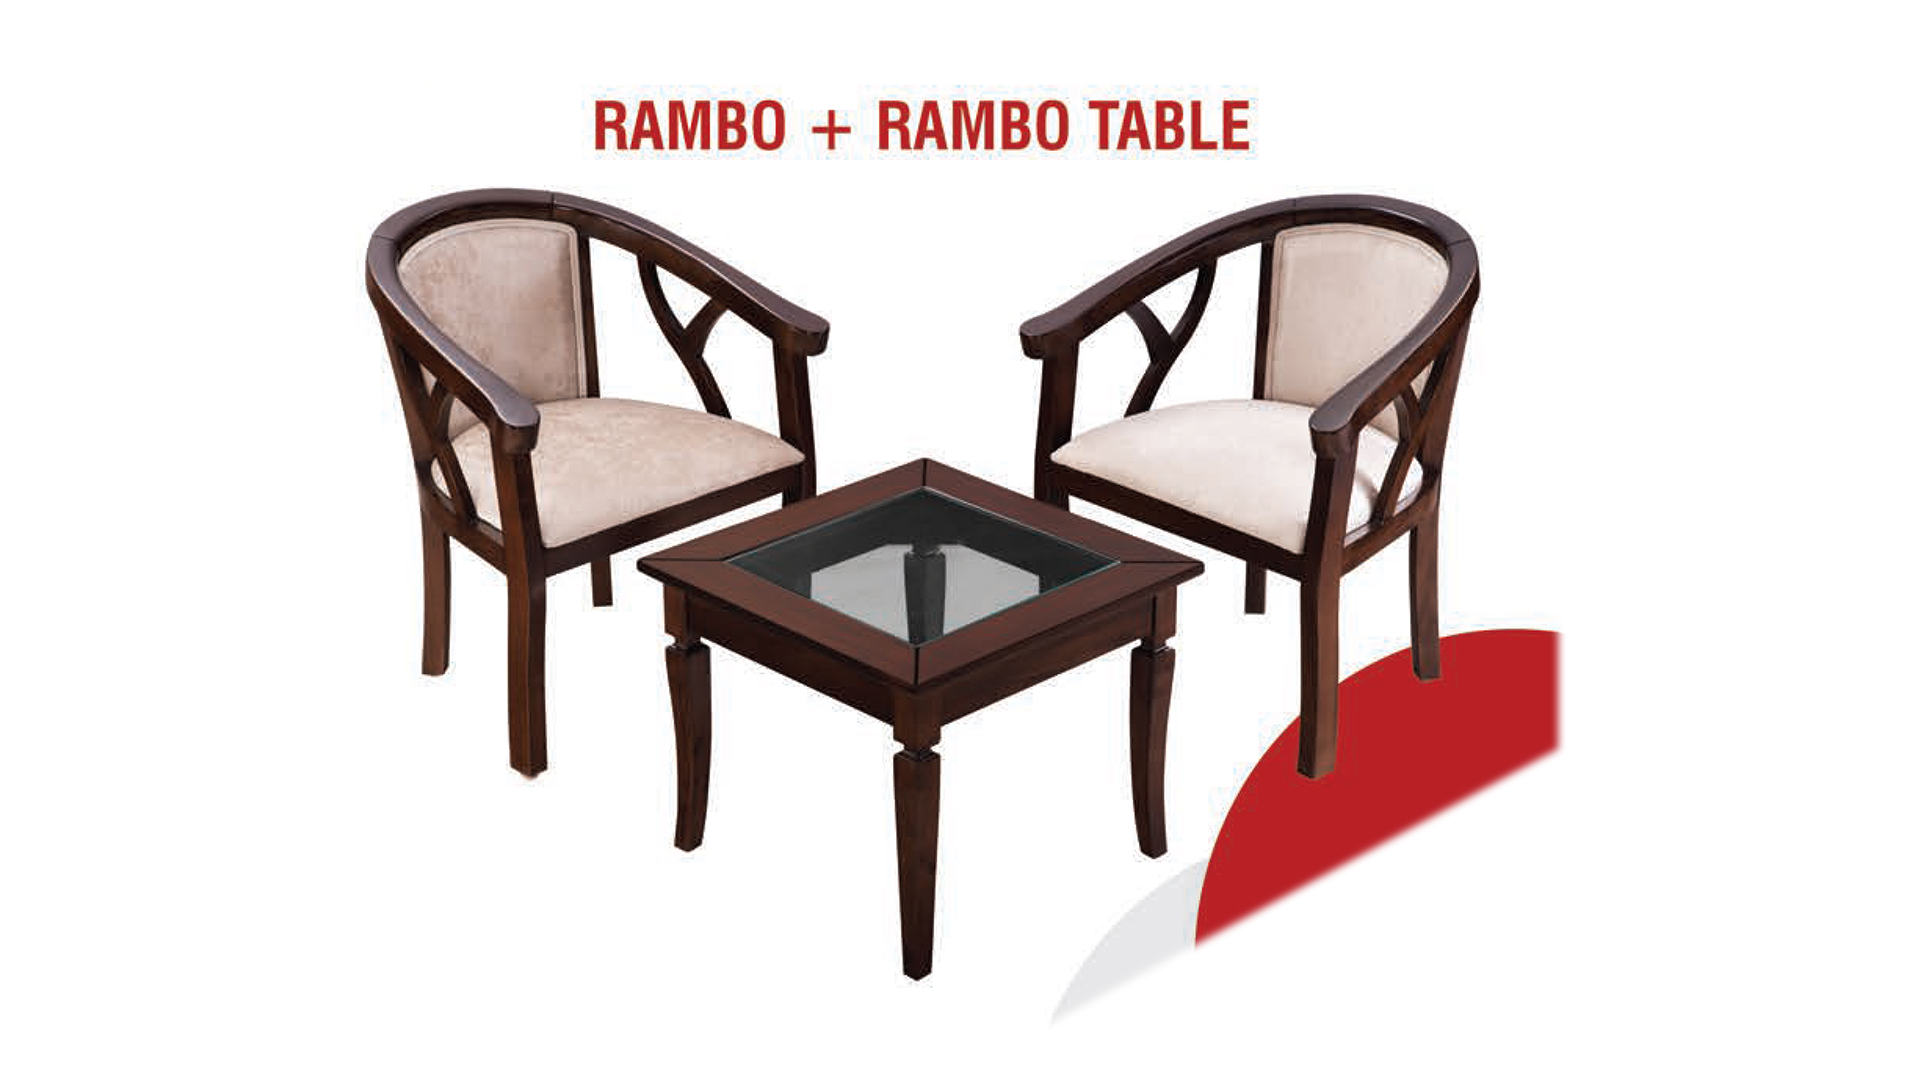 RAMBO + RAMBO TABLE